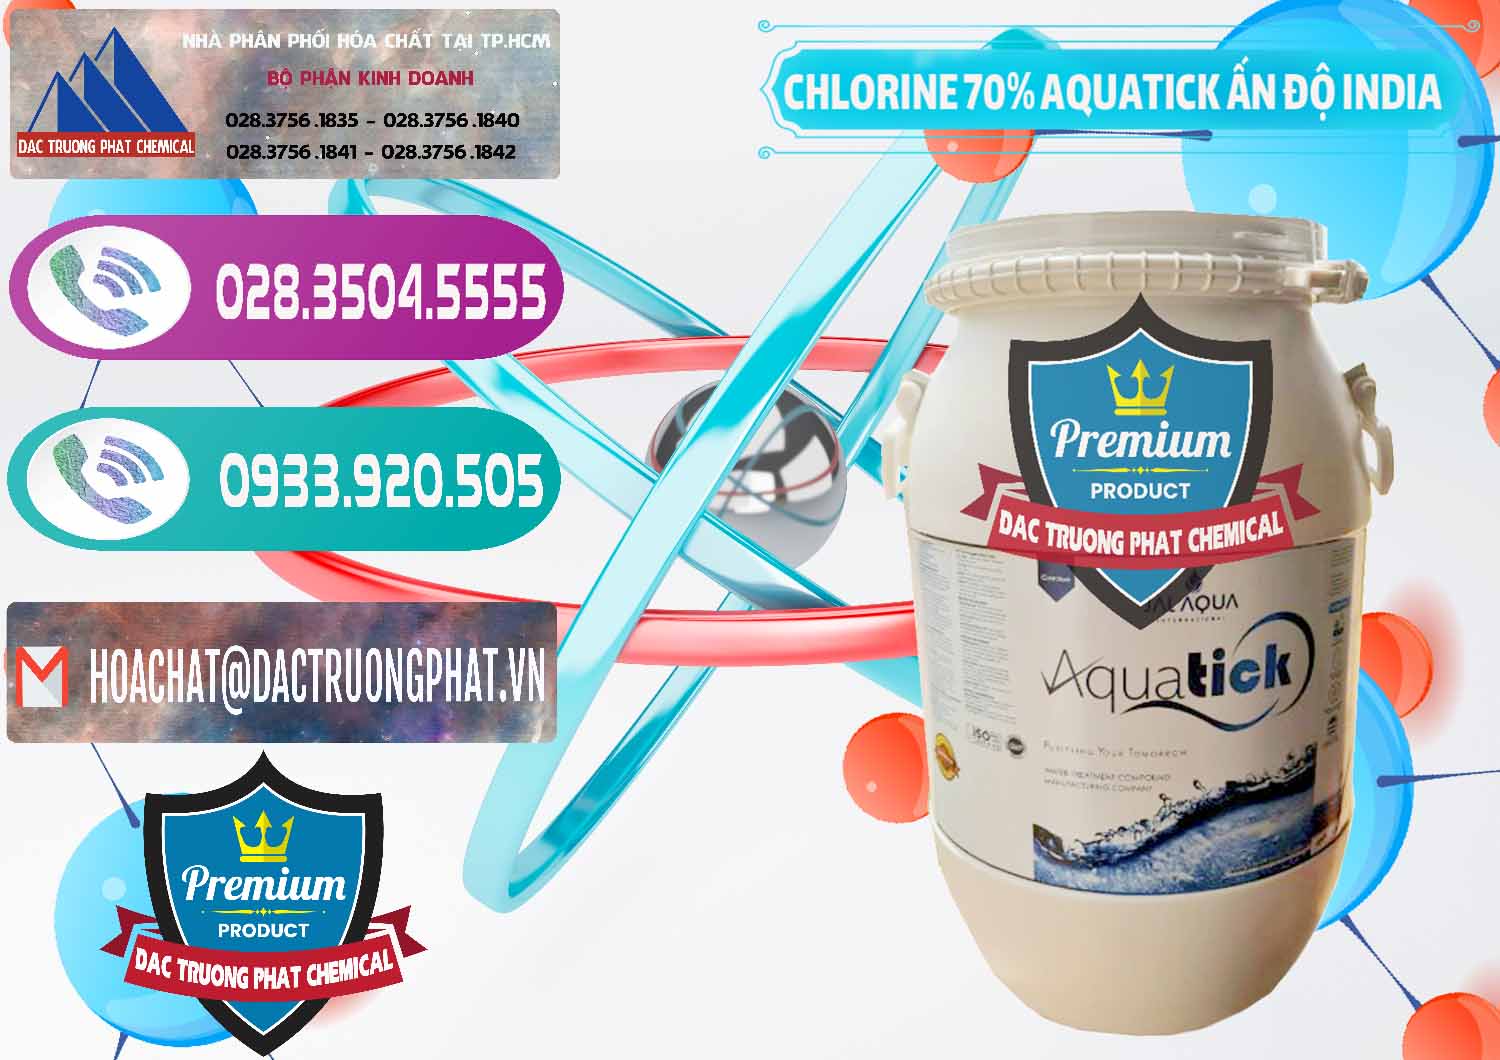 Cty chuyên cung ứng ( bán ) Chlorine – Clorin 70% Aquatick Jal Aqua Ấn Độ India - 0215 - Công ty kinh doanh ( cung cấp ) hóa chất tại TP.HCM - hoachatxulynuoc.com